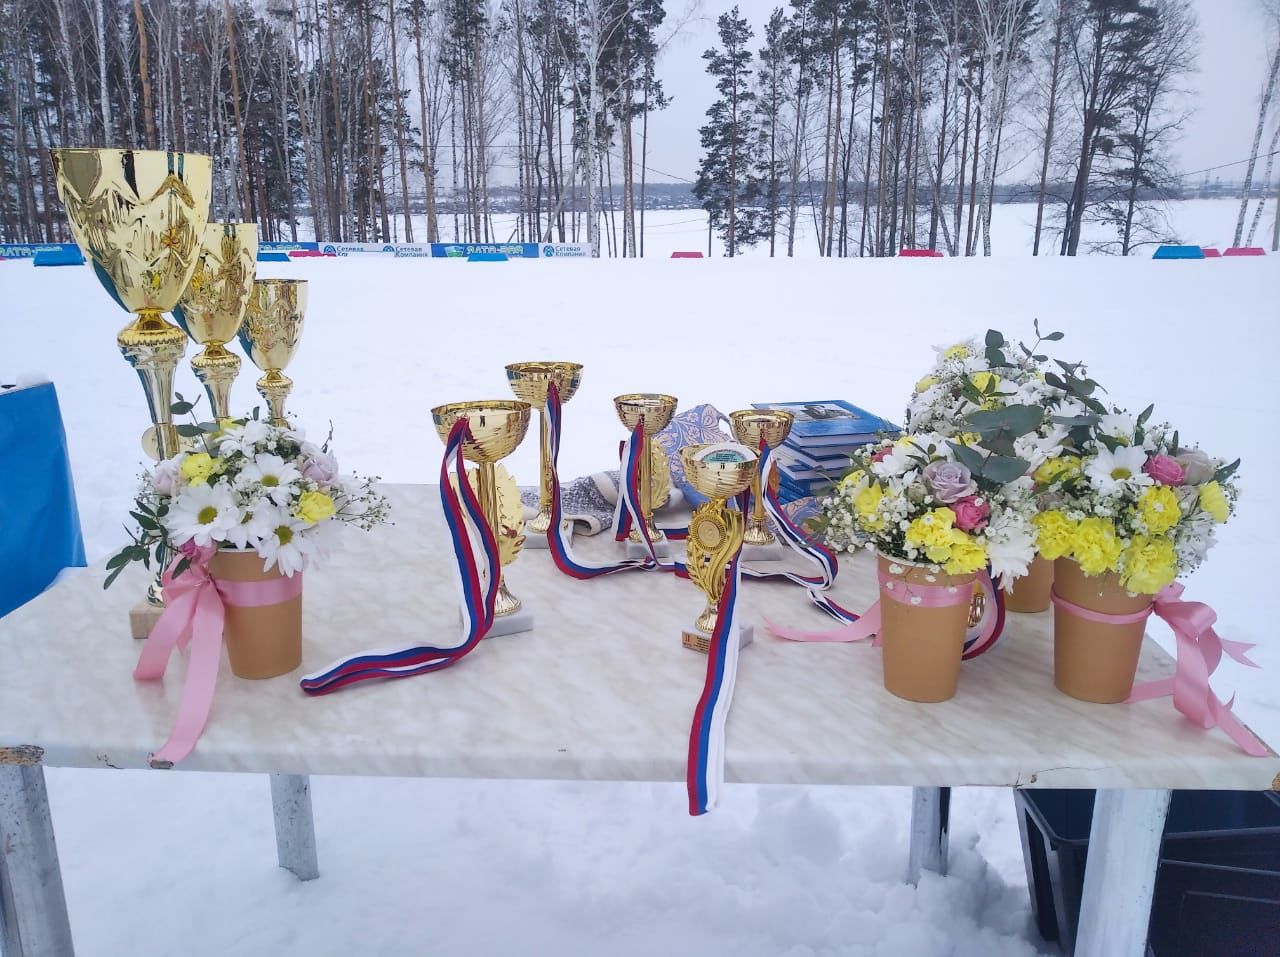 Команда республики Татарстан заняла 3 место на Всероссийских соревнованиях по лыжным гонкам